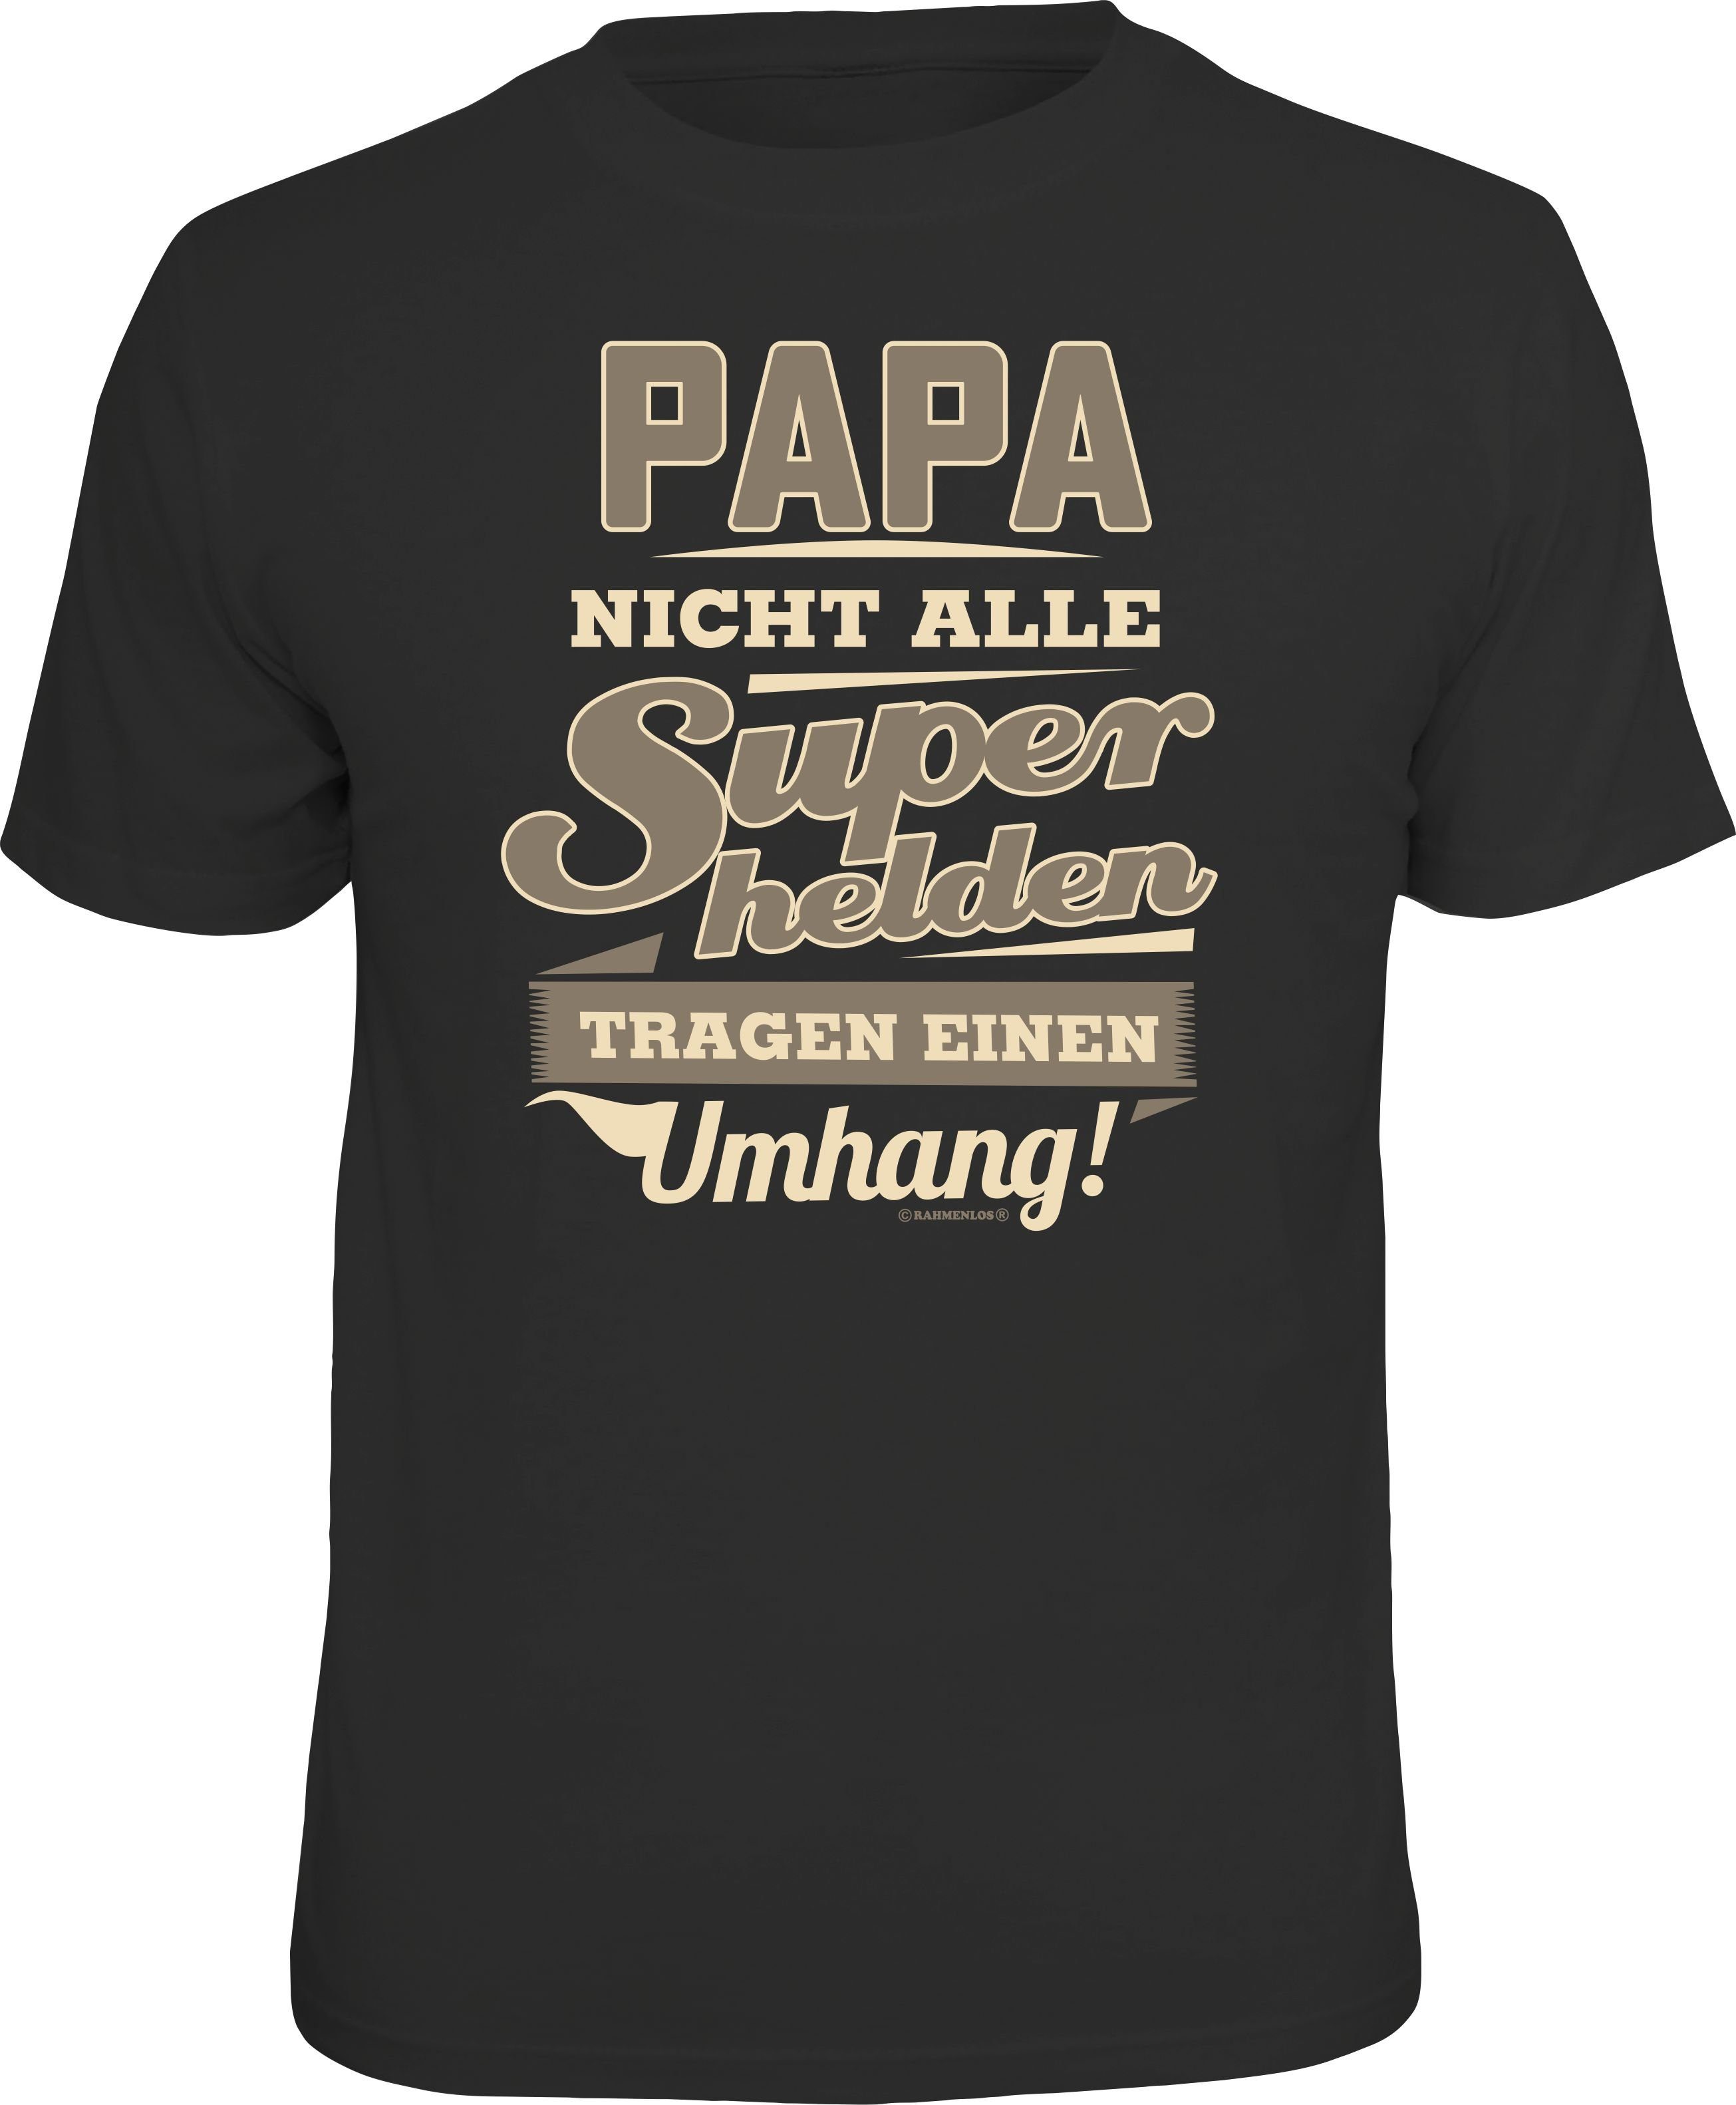 Rahmenlos T-Shirt Das Geschenk für Papa - Väter Superheld